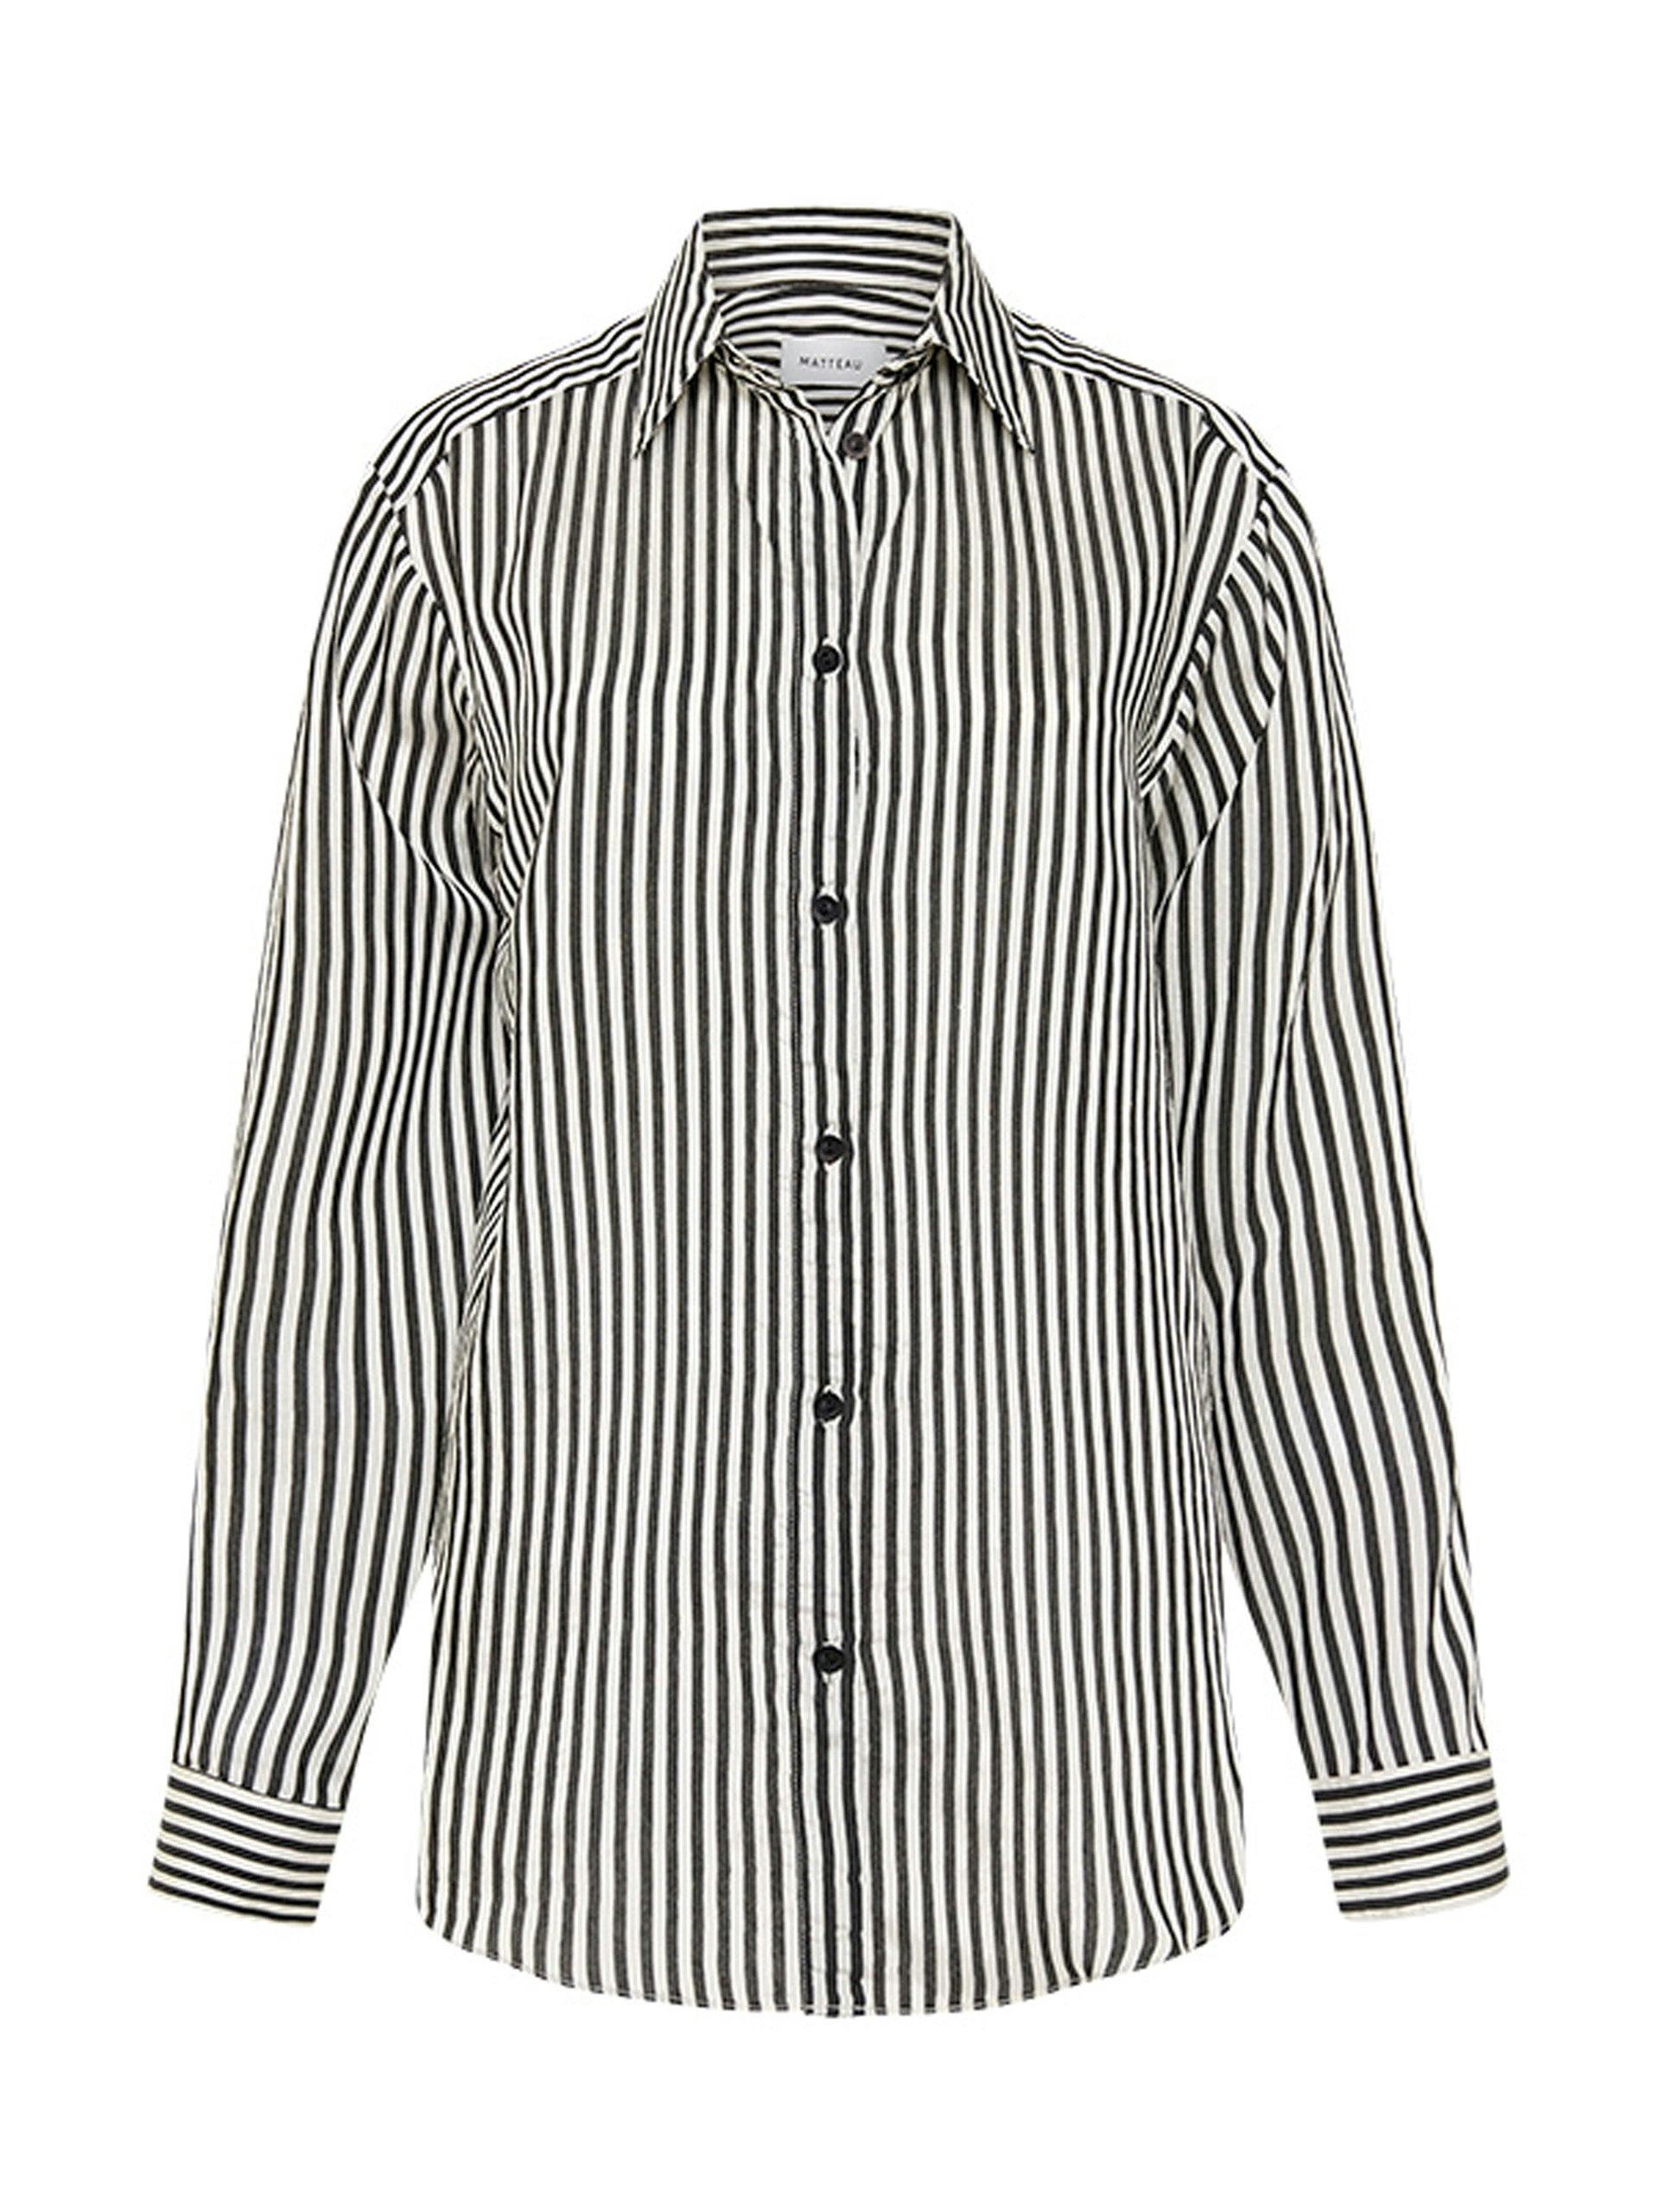 Classic Contrast Stripe shirt in Ink stripe